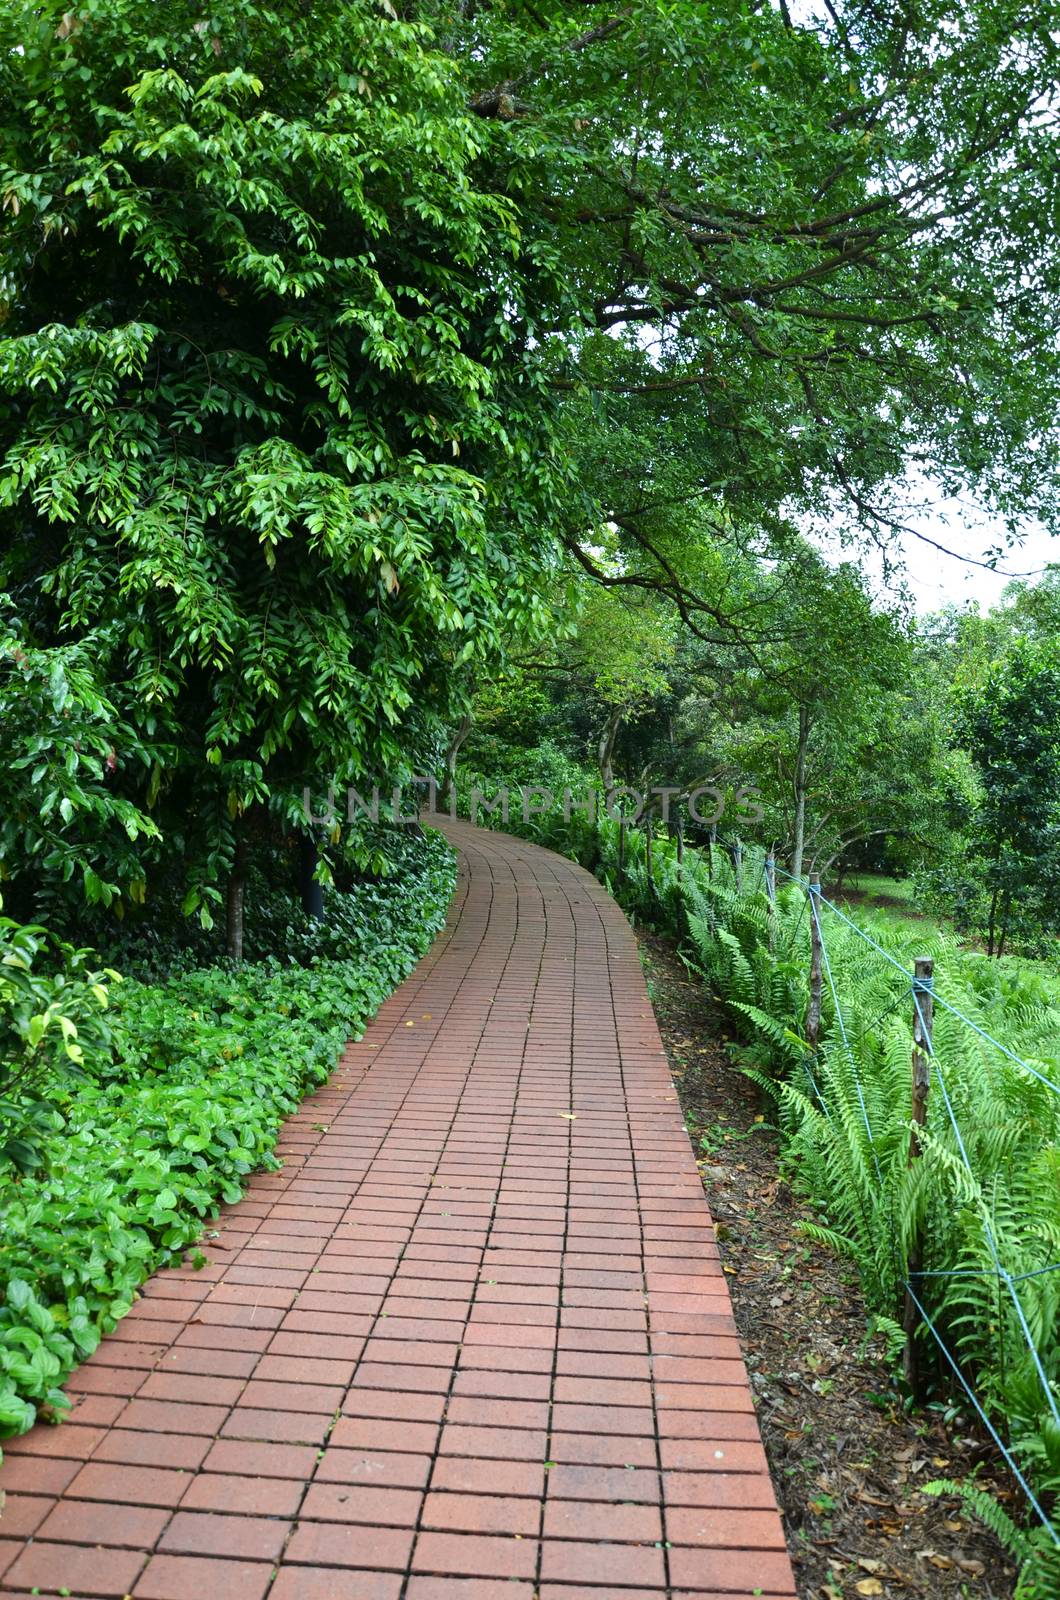 Greenary around Red brick path in Singapore Botanic Garden